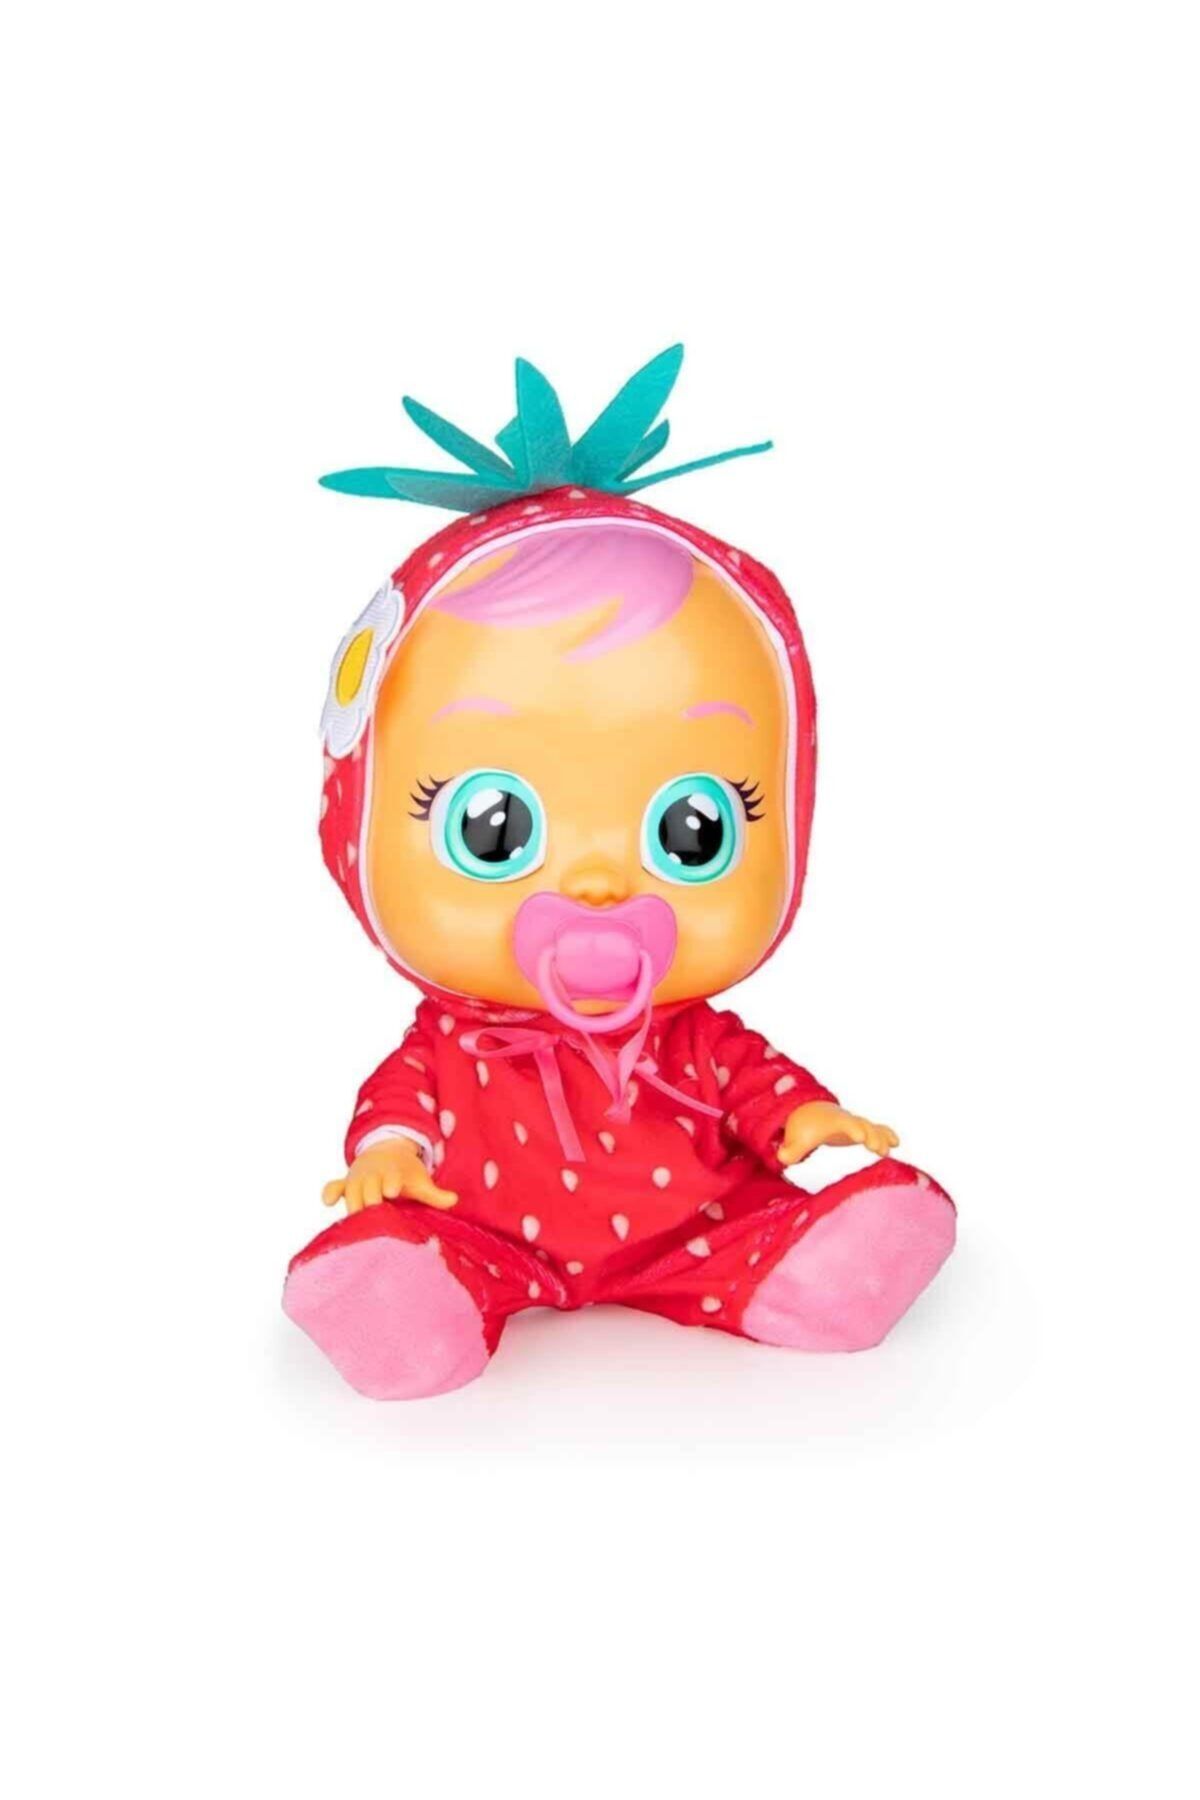 SAZE Cry Babies Ağlayan Bebekler Tutti Frutti Cyb12000 Marka: Gıochı Kategori: